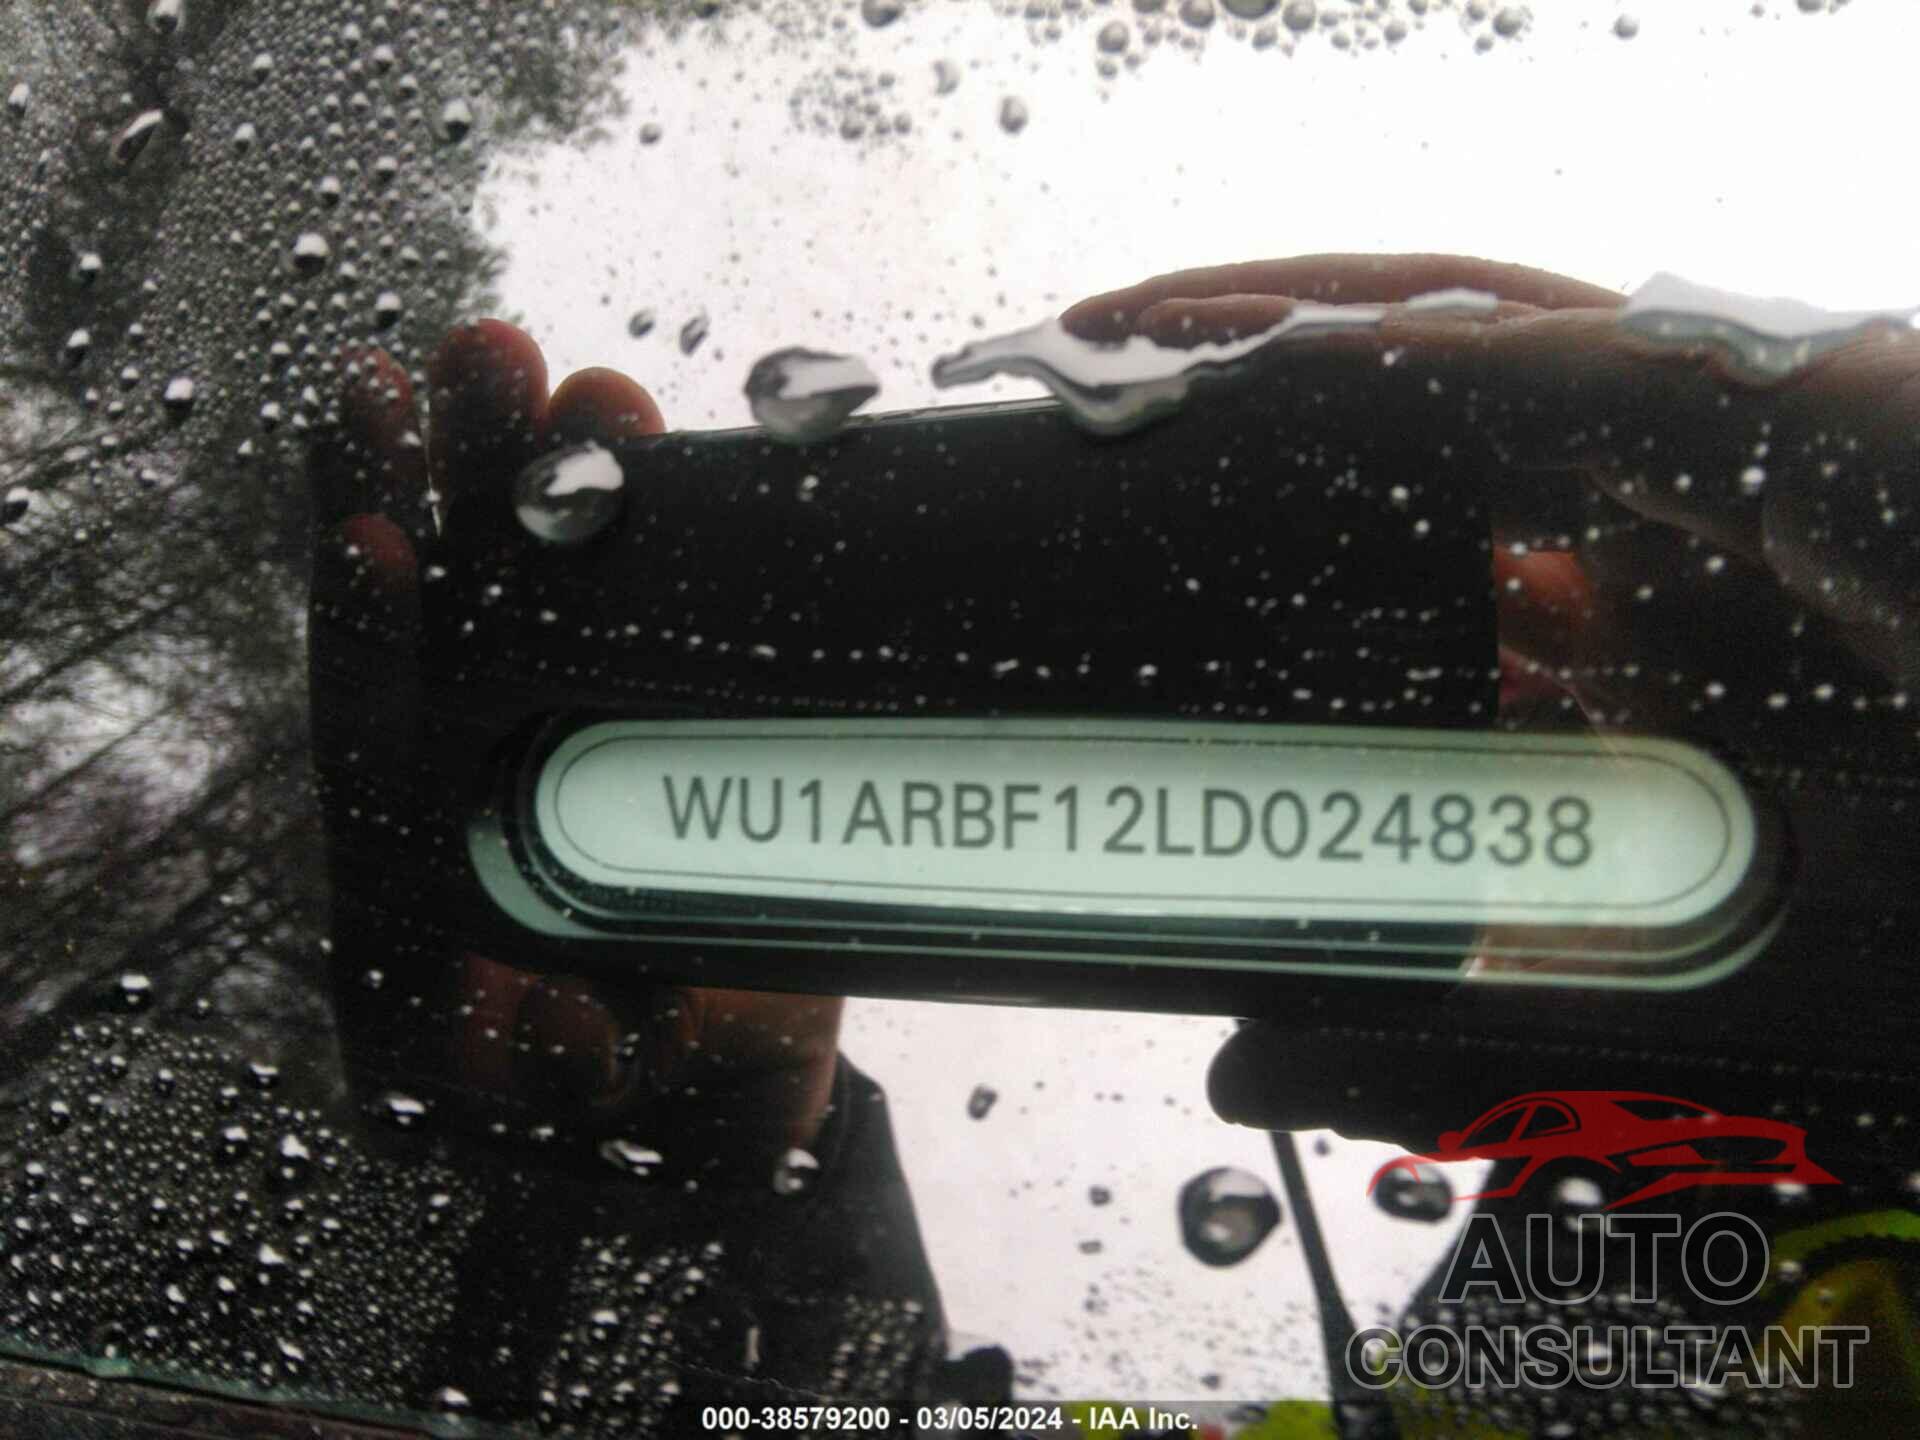 AUDI RS Q8 2020 - WU1ARBF12LD024838